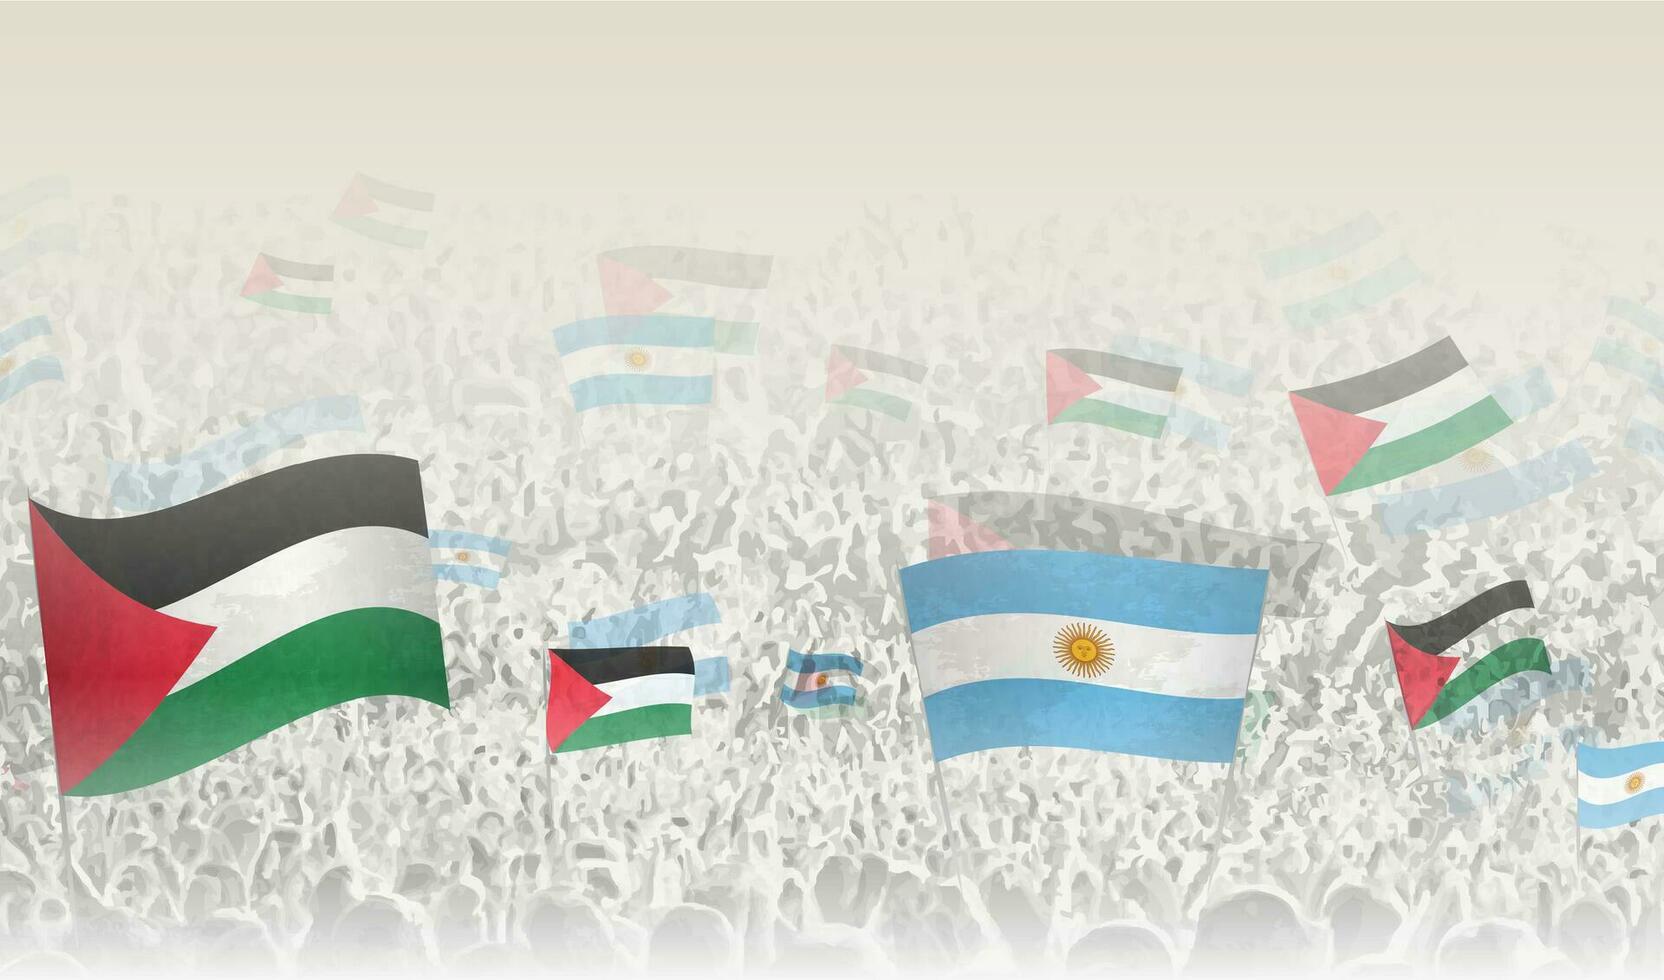 Palestina y argentina banderas en un multitud de aplausos gente. vector